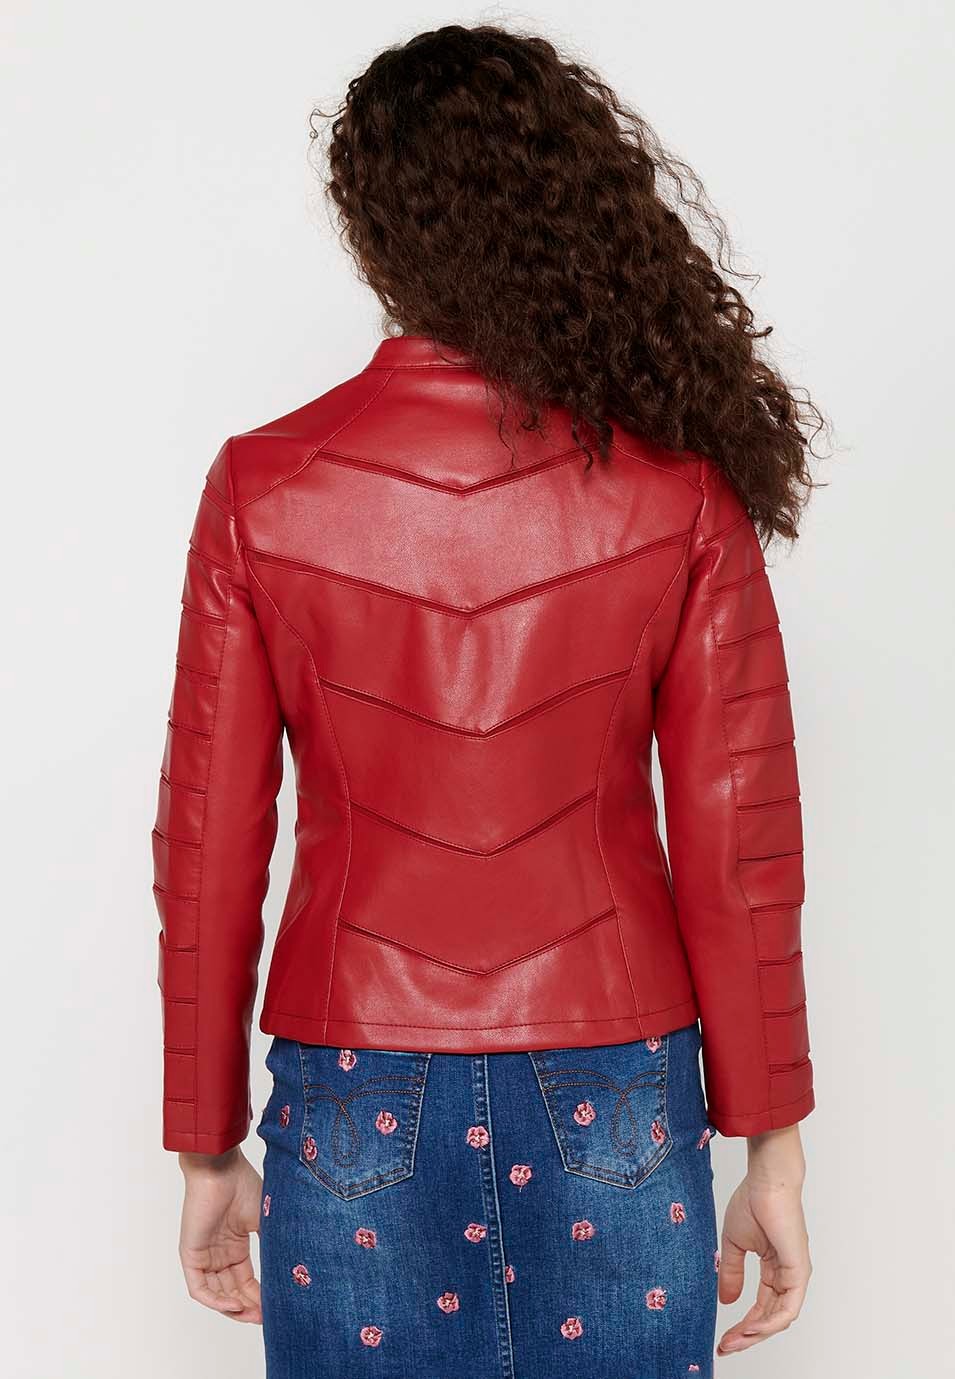 Langärmlige Jacke in Lederoptik mit Rundhalsausschnitt und Schnittdetails. Roter Reißverschluss vorne für Damen